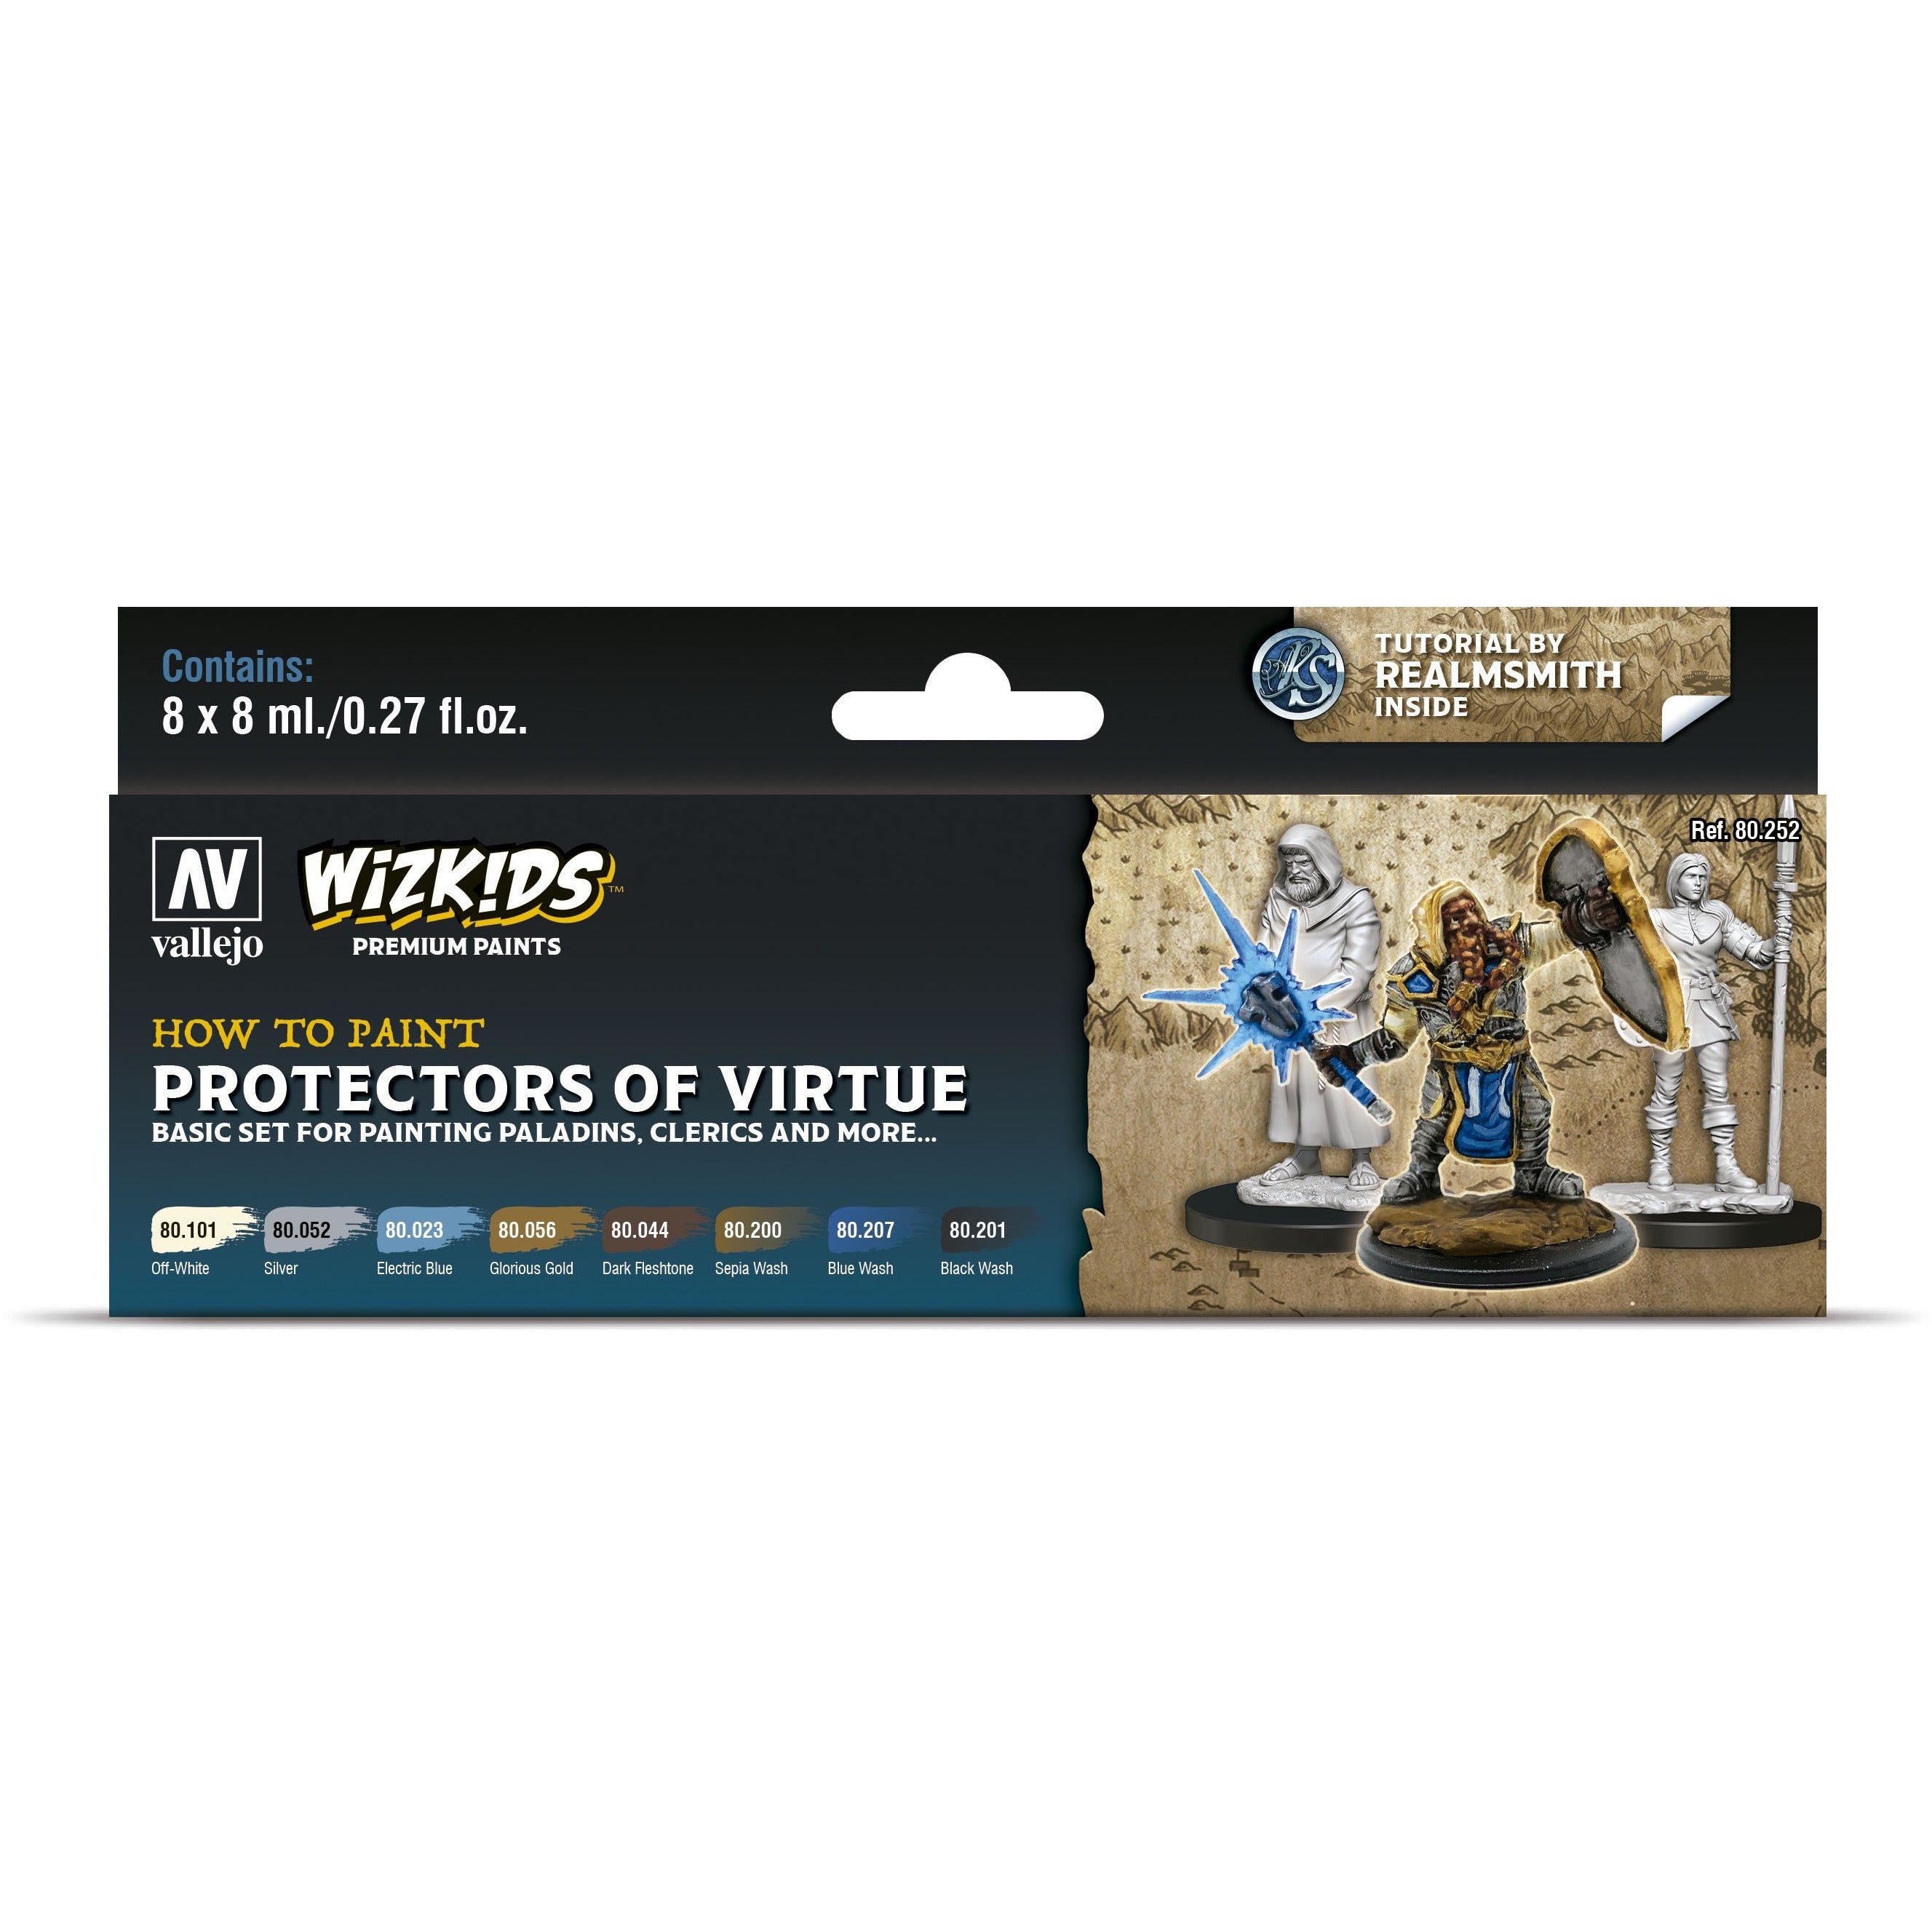 WIZK!DS Premium Paint Set Protectors of Virtue